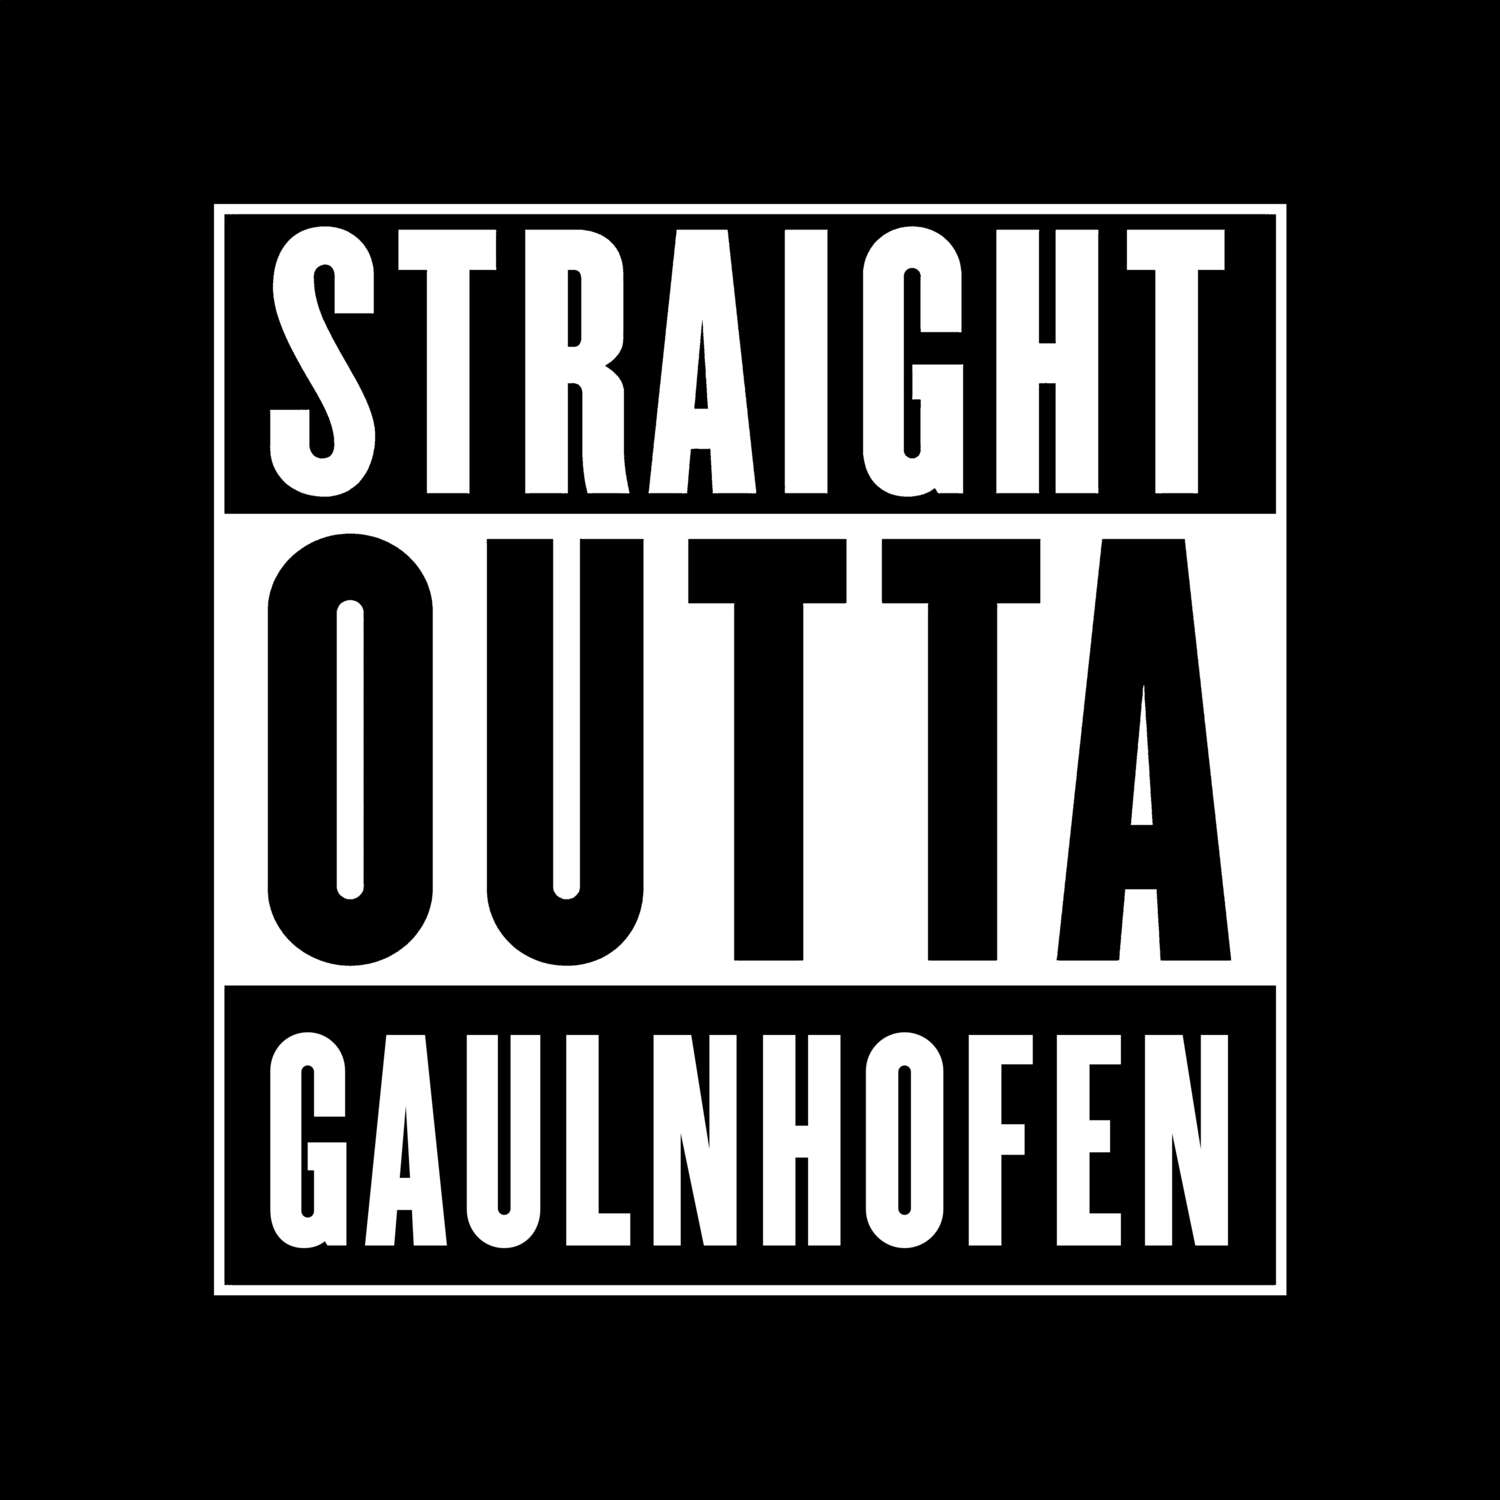 Gaulnhofen T-Shirt »Straight Outta«